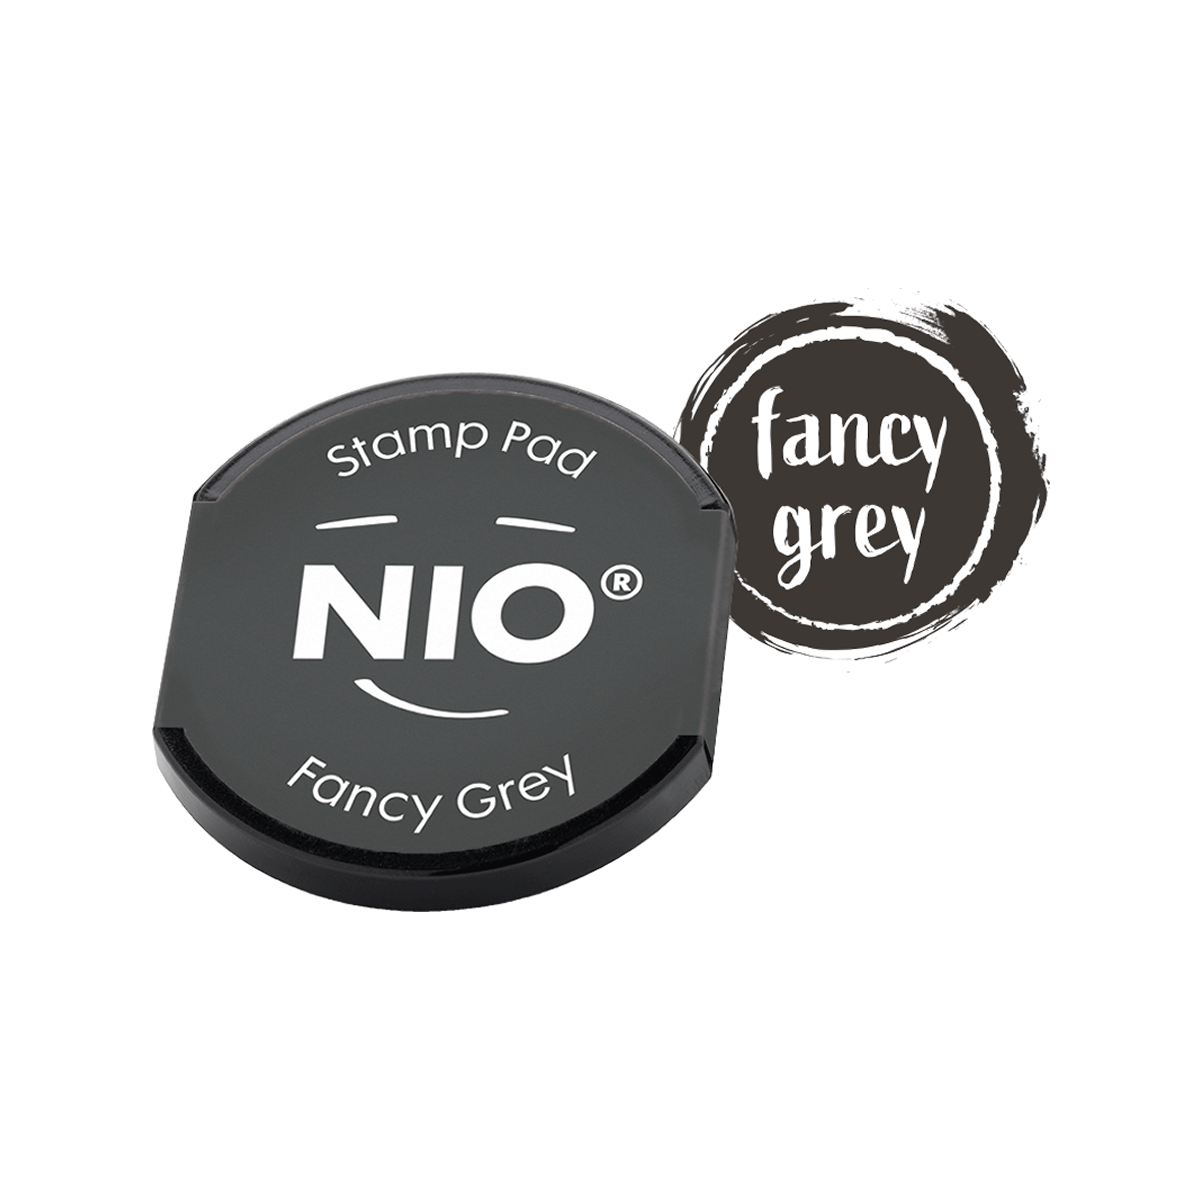 COLOP Arts & Crafts NIO Ταμπόν για Αυτόματη Σφραγίδα Fancy grey